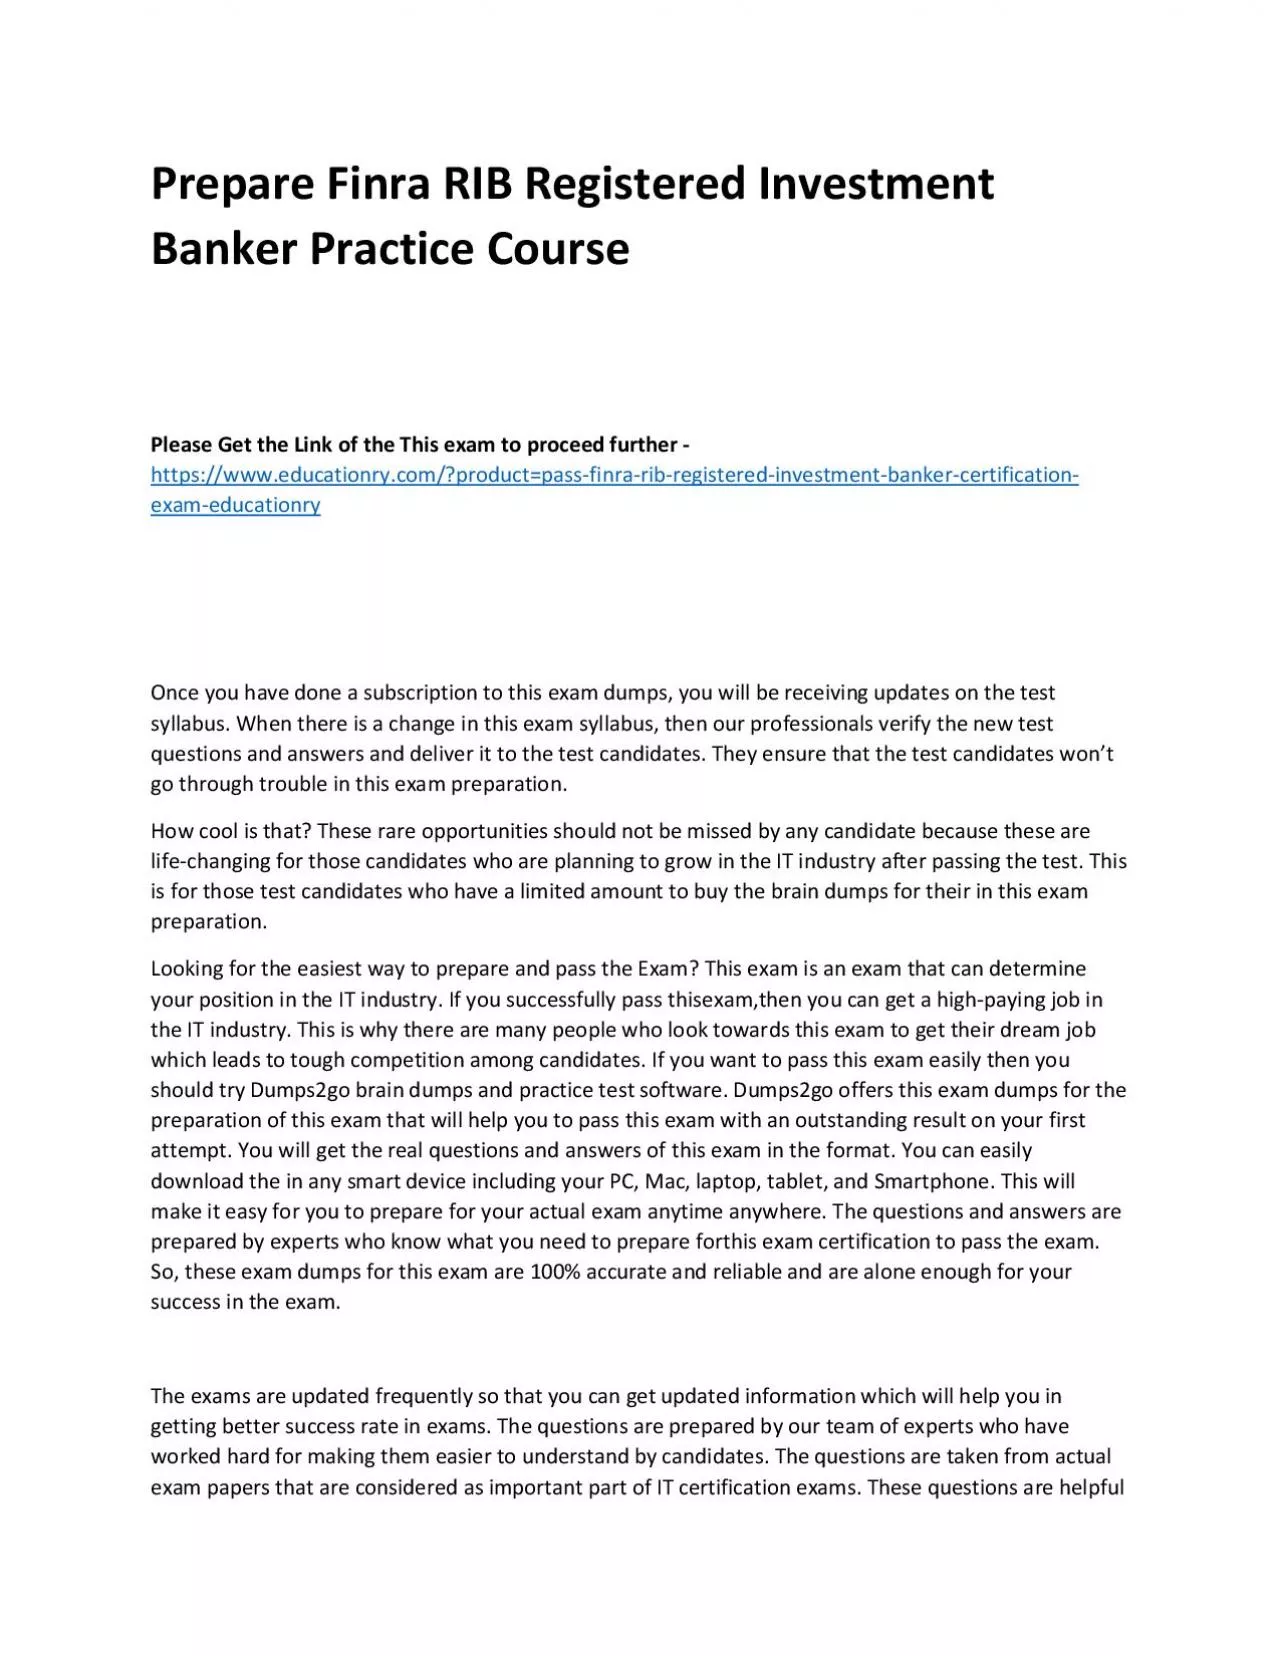 Finra RIB Registered Investment Banker